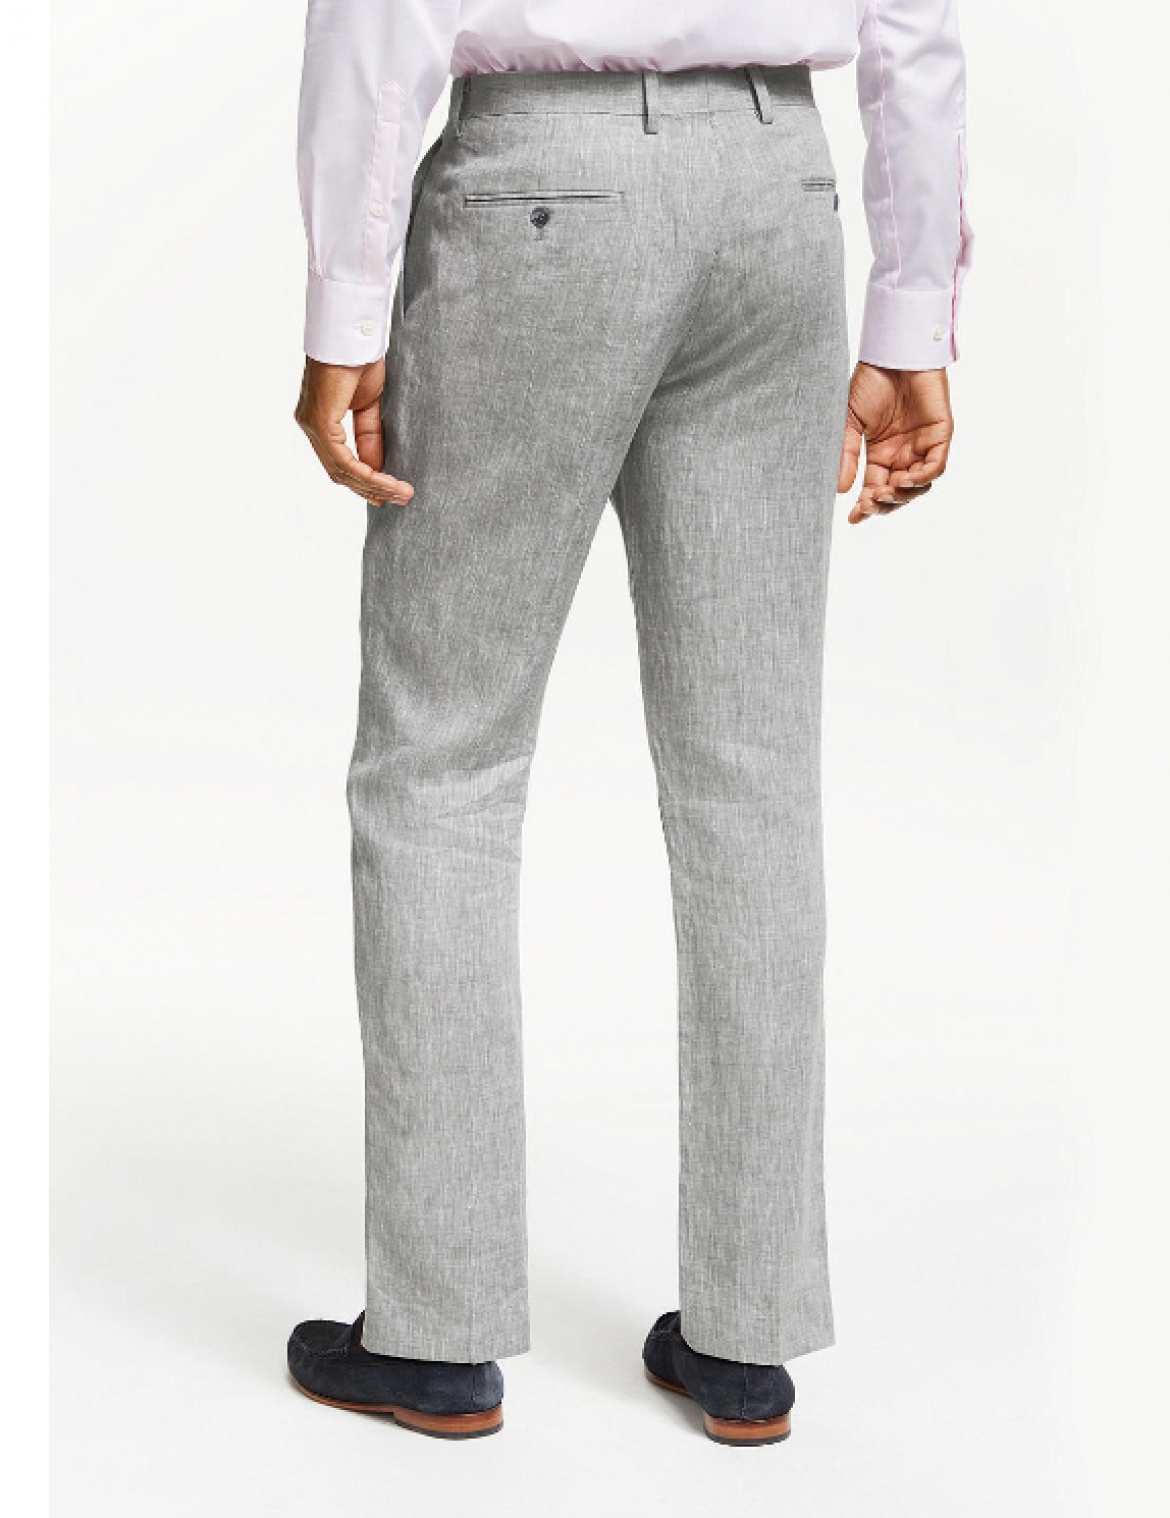 Men's pants linen